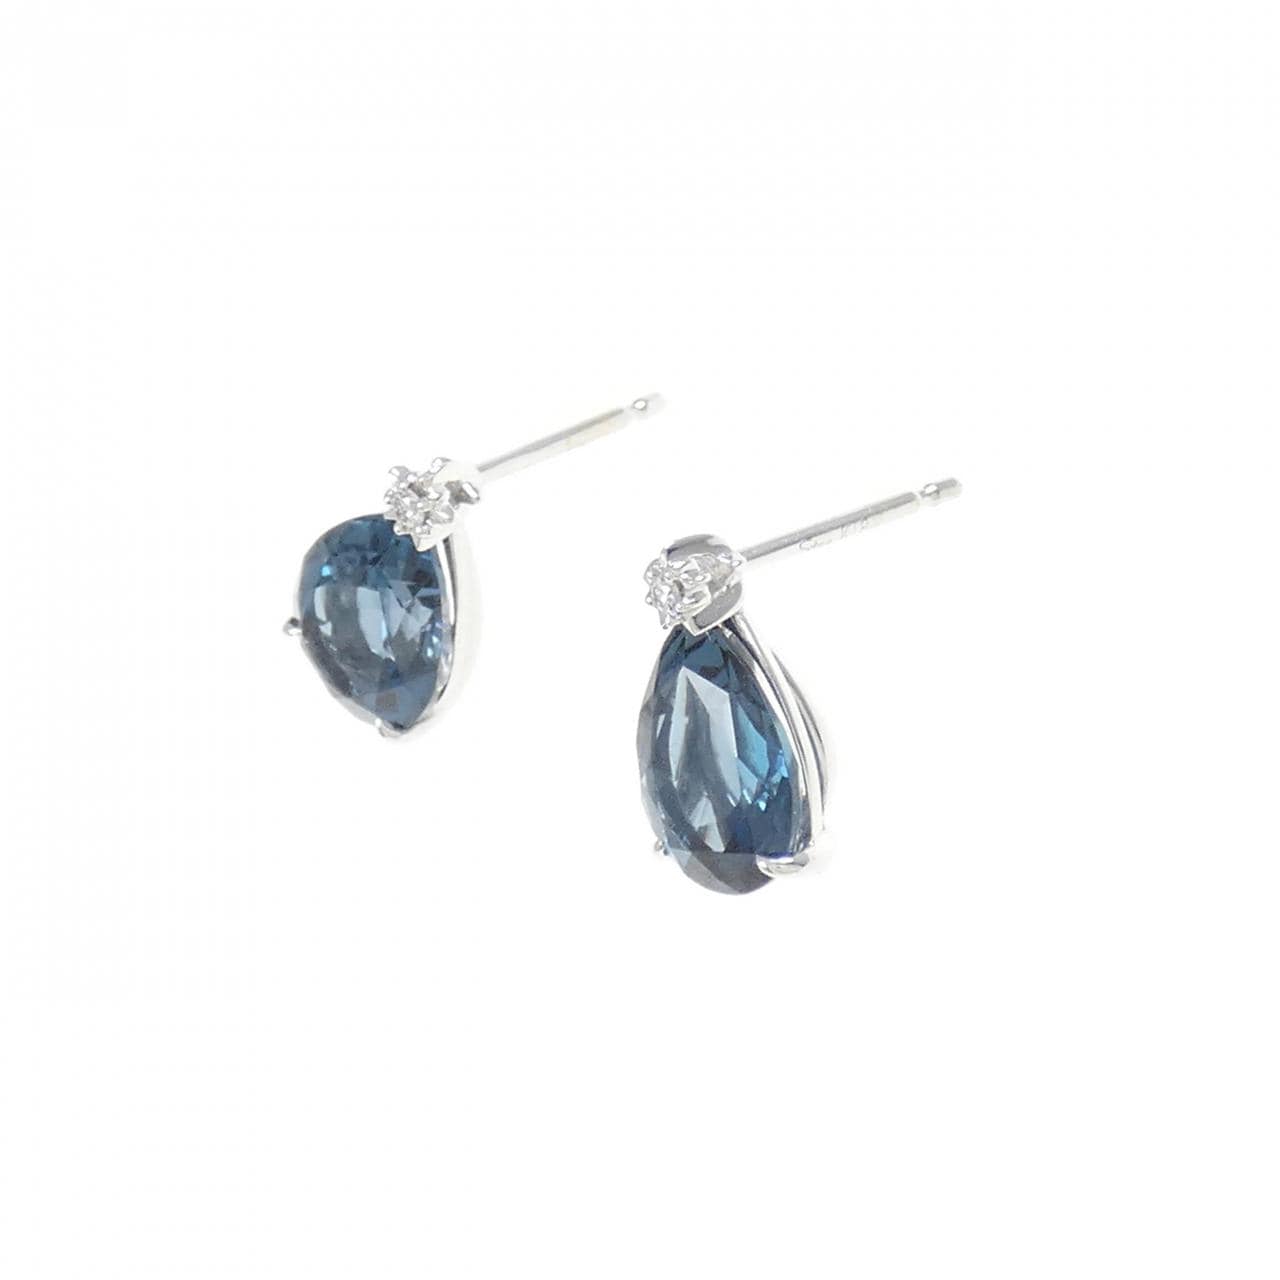 STAR JEWELRY Night Blue Earrings